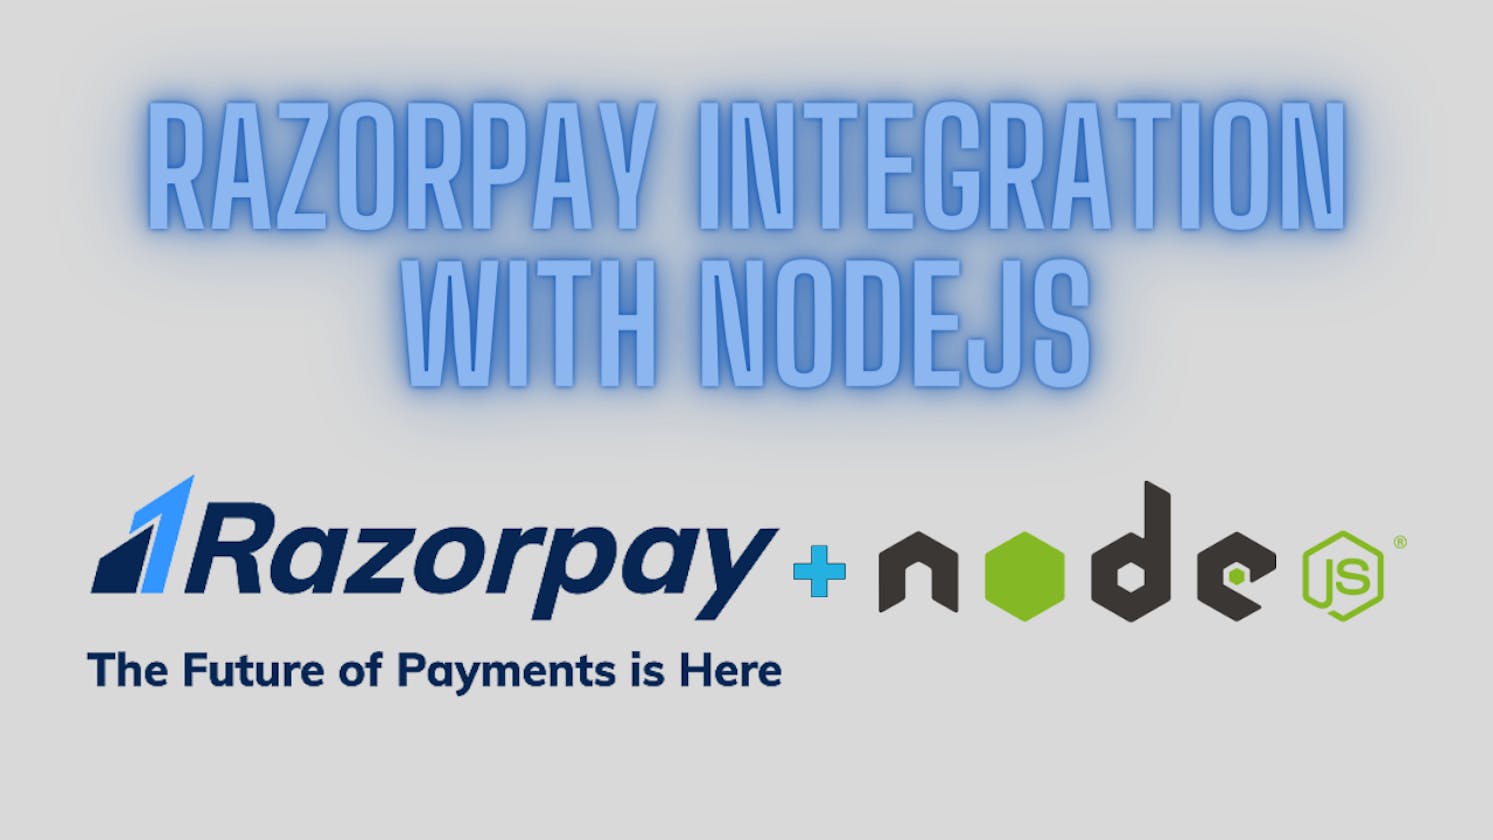 Razorpay Integration with NodeJS